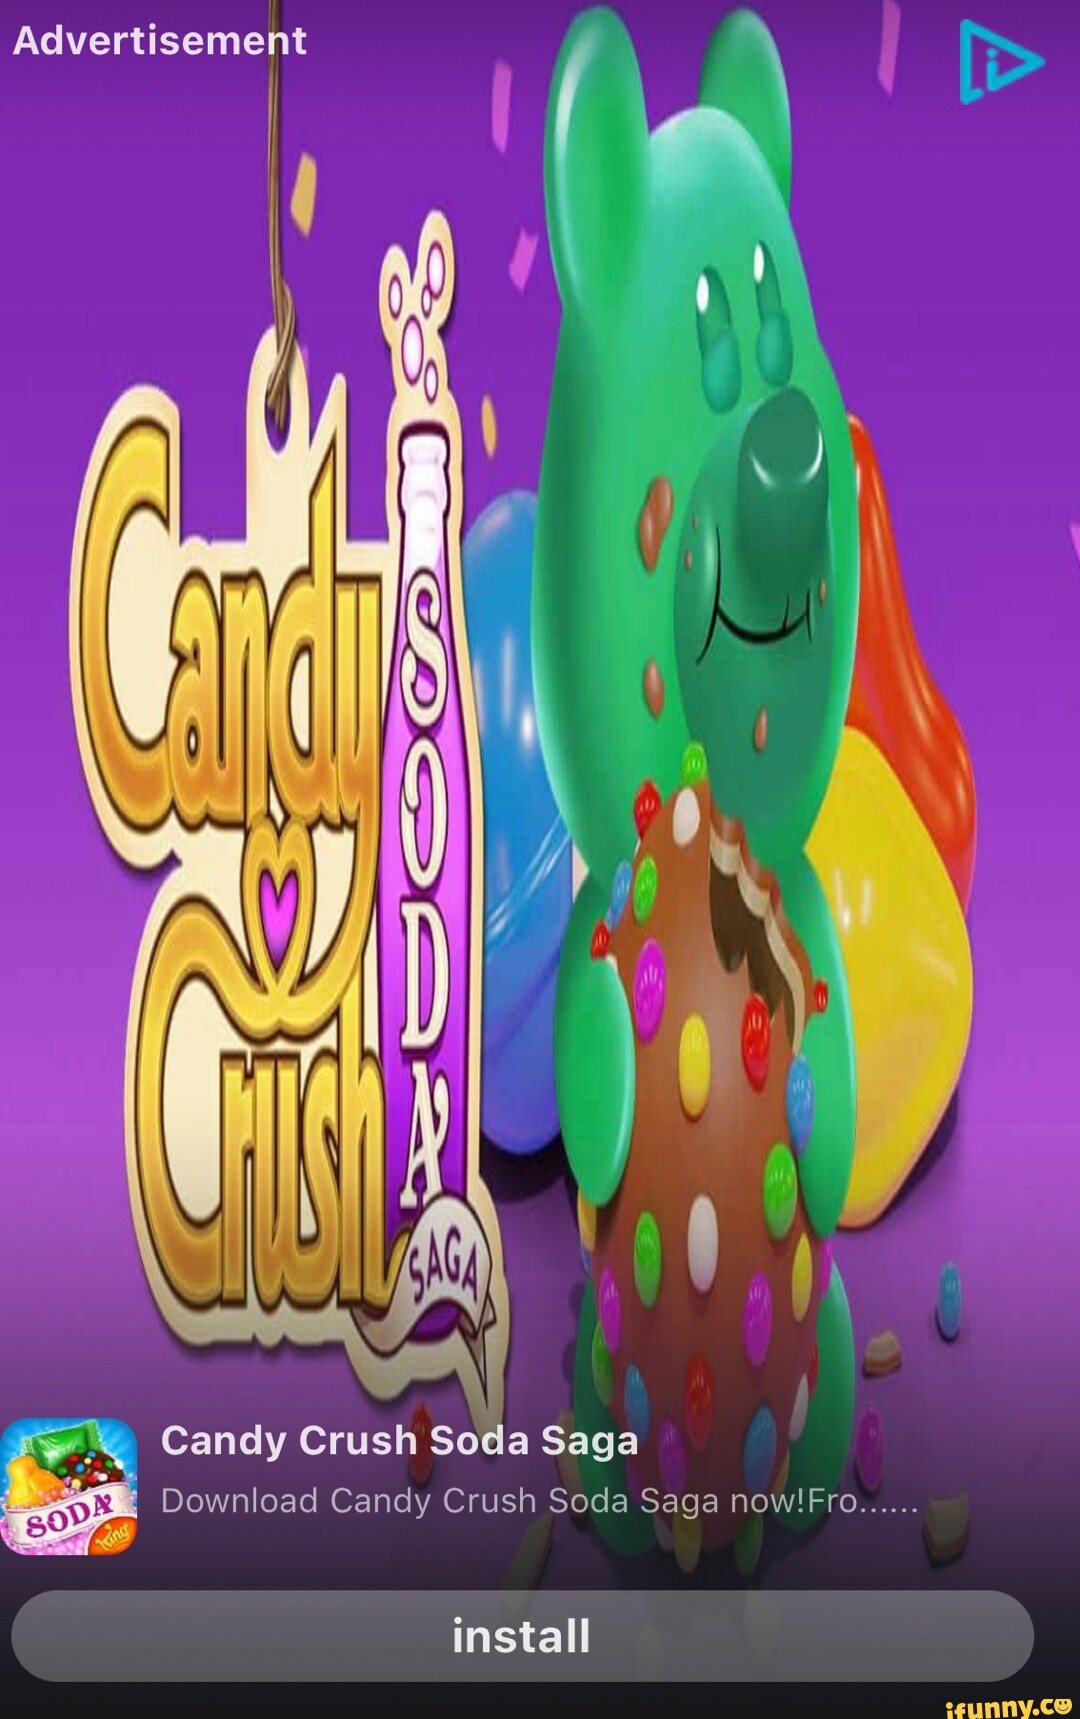 Candy Crush Soda Saga added a new - Candy Crush Soda Saga